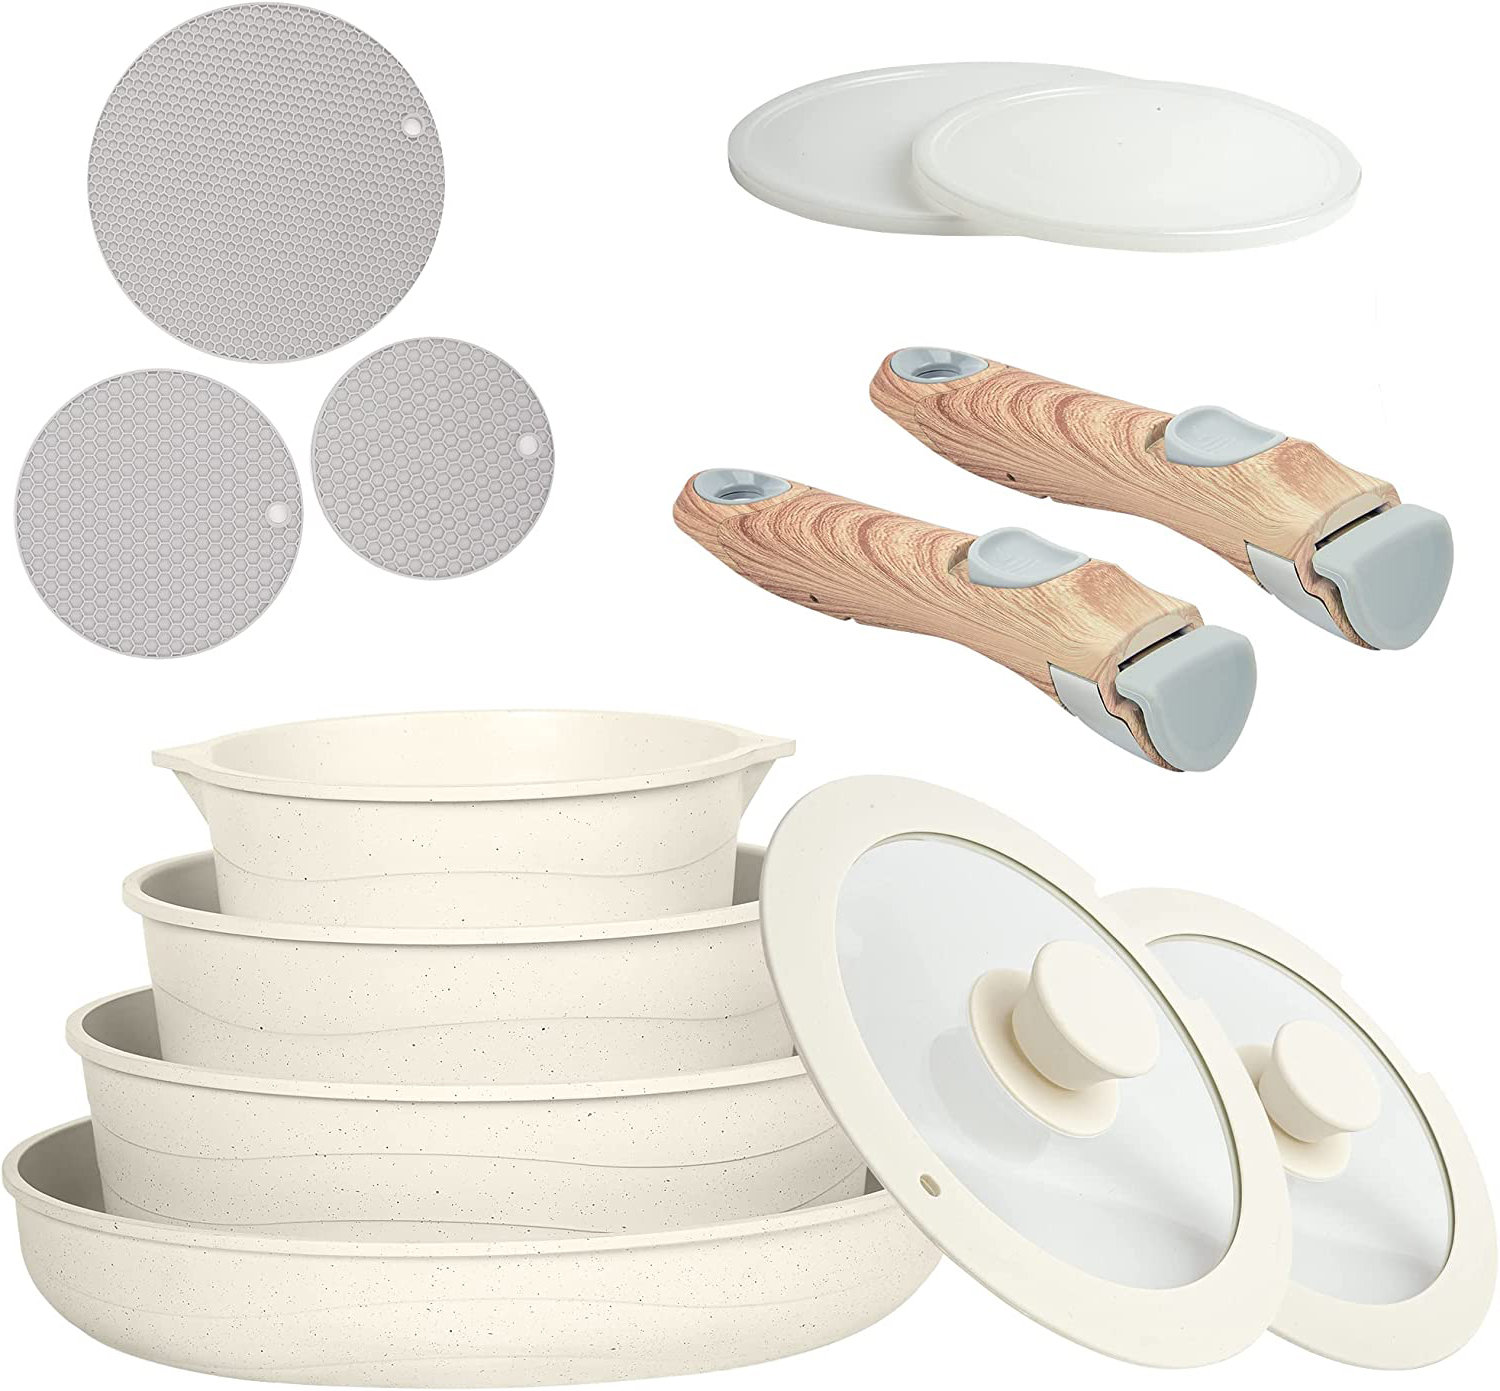 https://assets.wfcdn.com/im/86569512/compr-r85/2551/255103978/caannasweis-8-pieces-nonstick-cookware-sets-with-detachable-handles.jpg